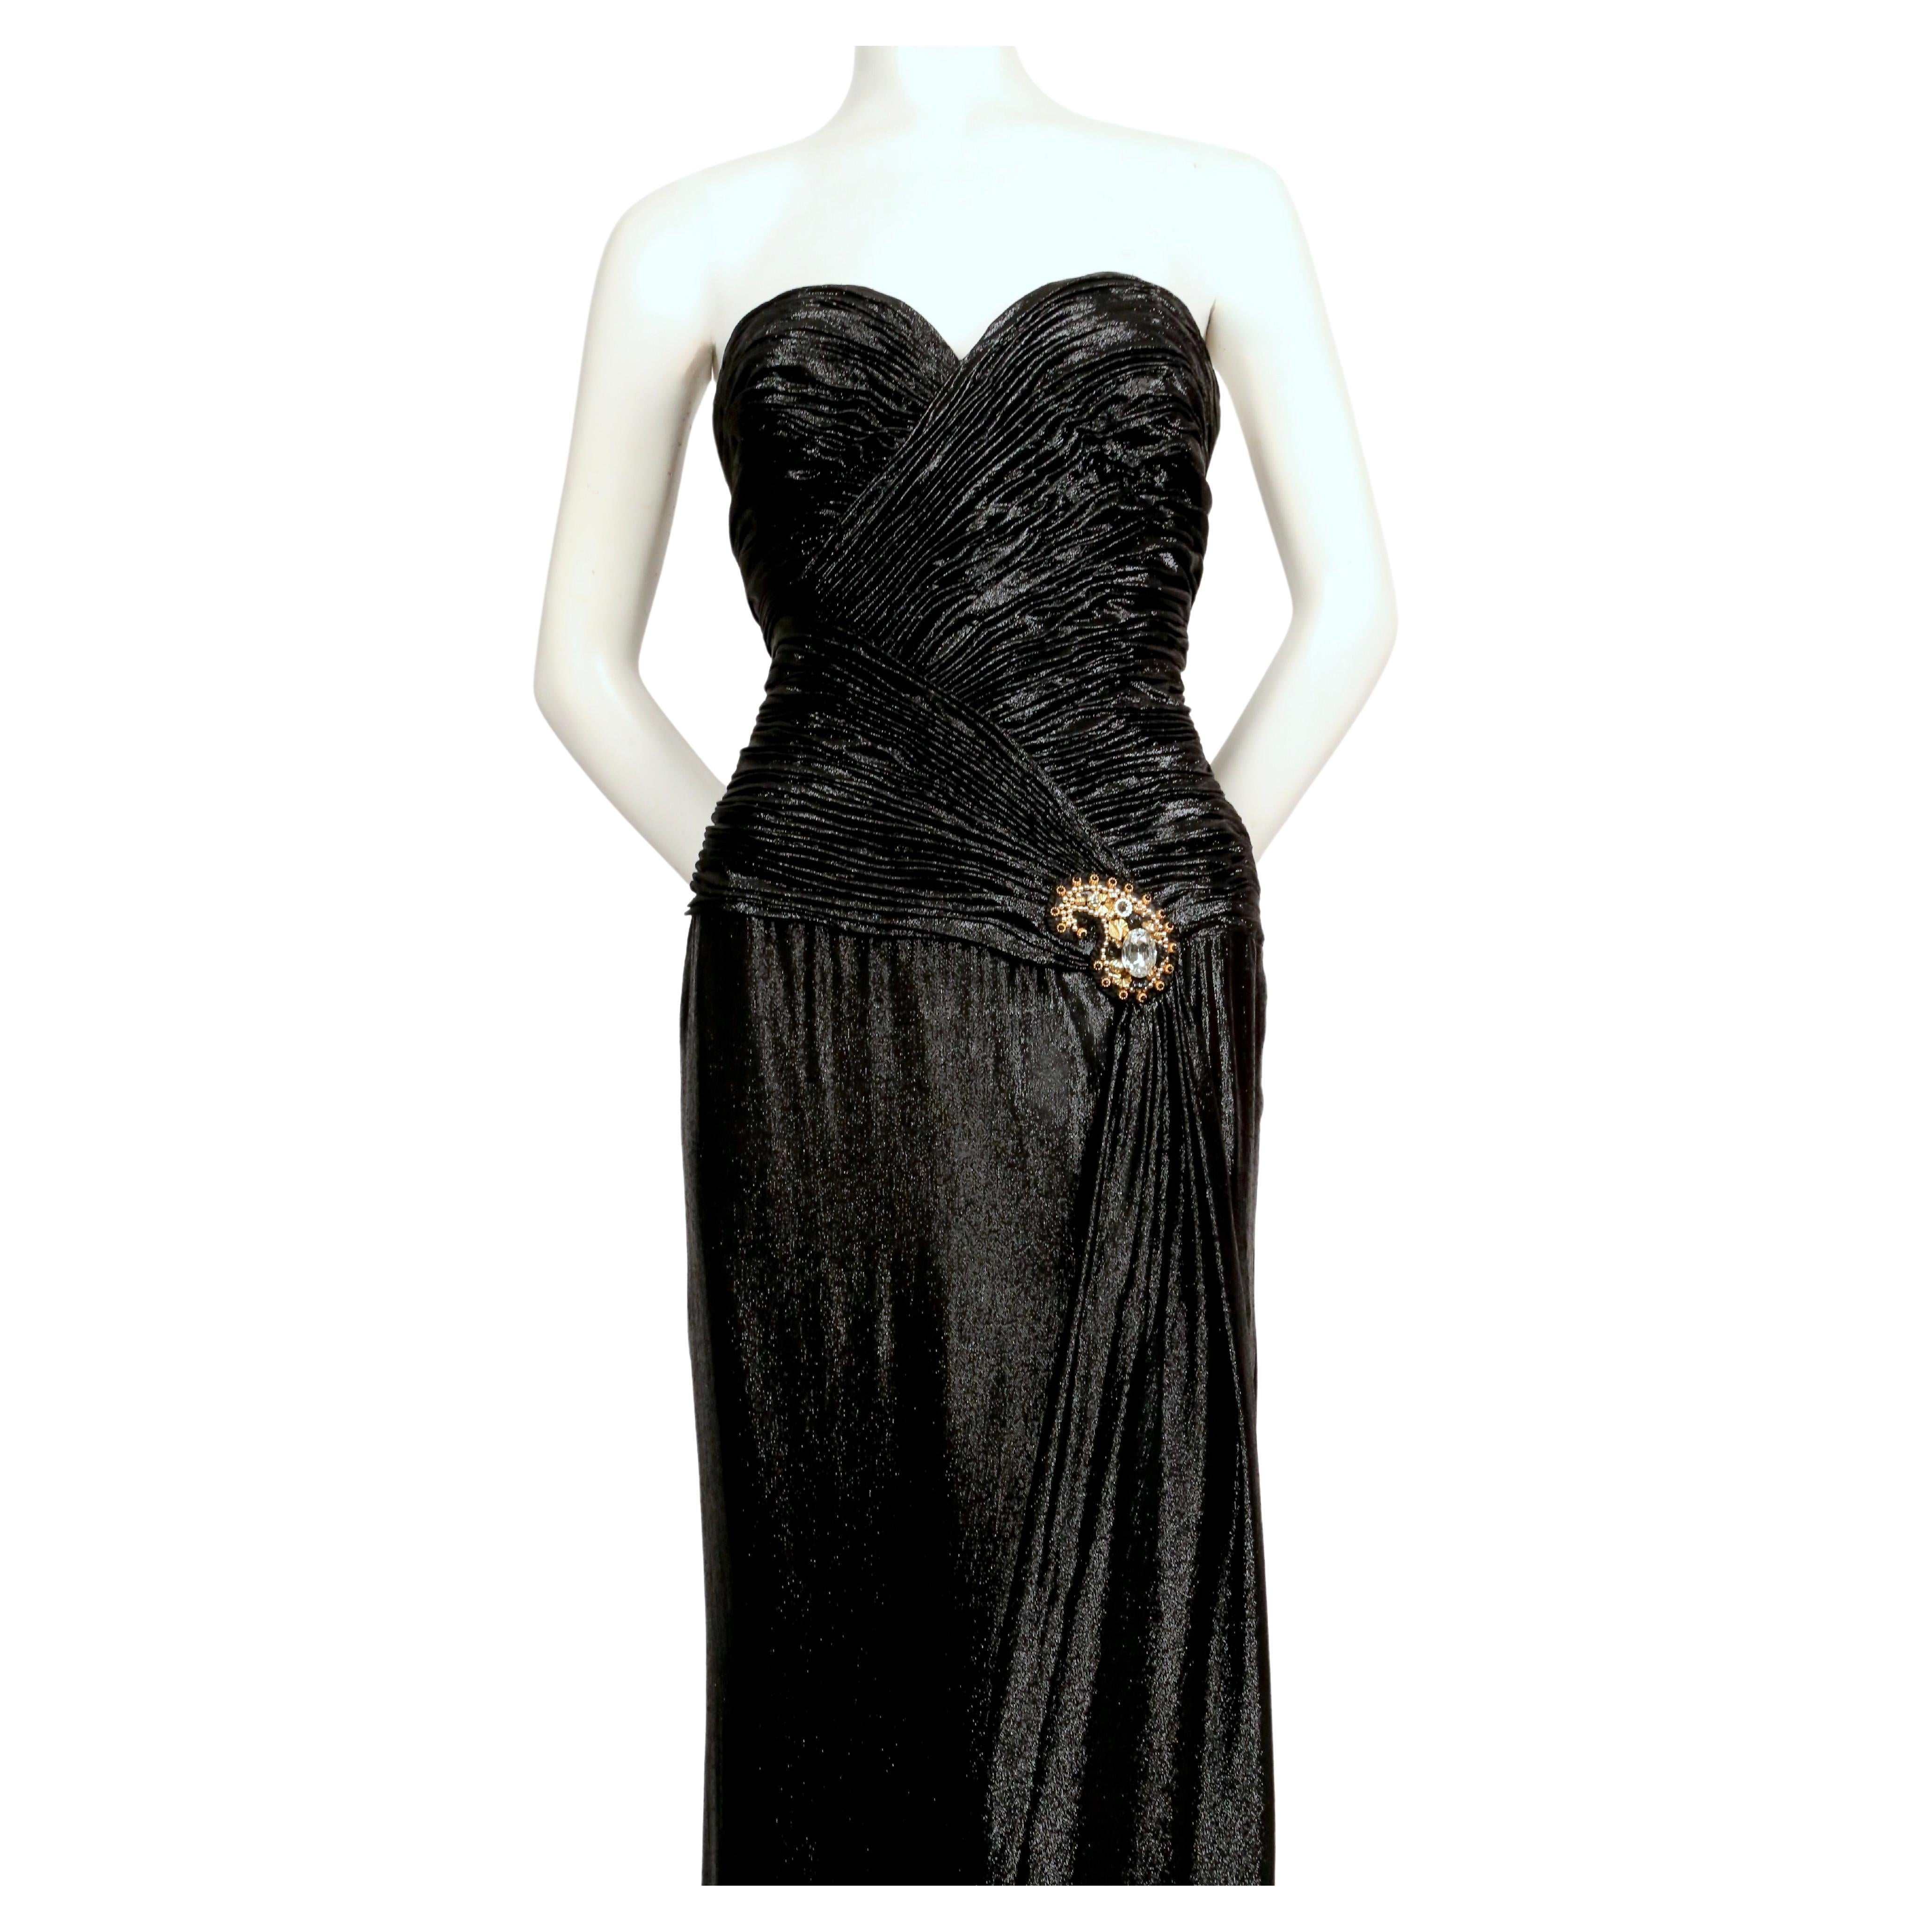 Robe noire métallisée avec corsage ruché et ornementation perlée à la taille, conçue par Loris Azzaro et datant du début des années 1980. Aucune taille n'est indiquée, mais cette robe convient mieux à une taille 4-6.  Mesure approximativement 34